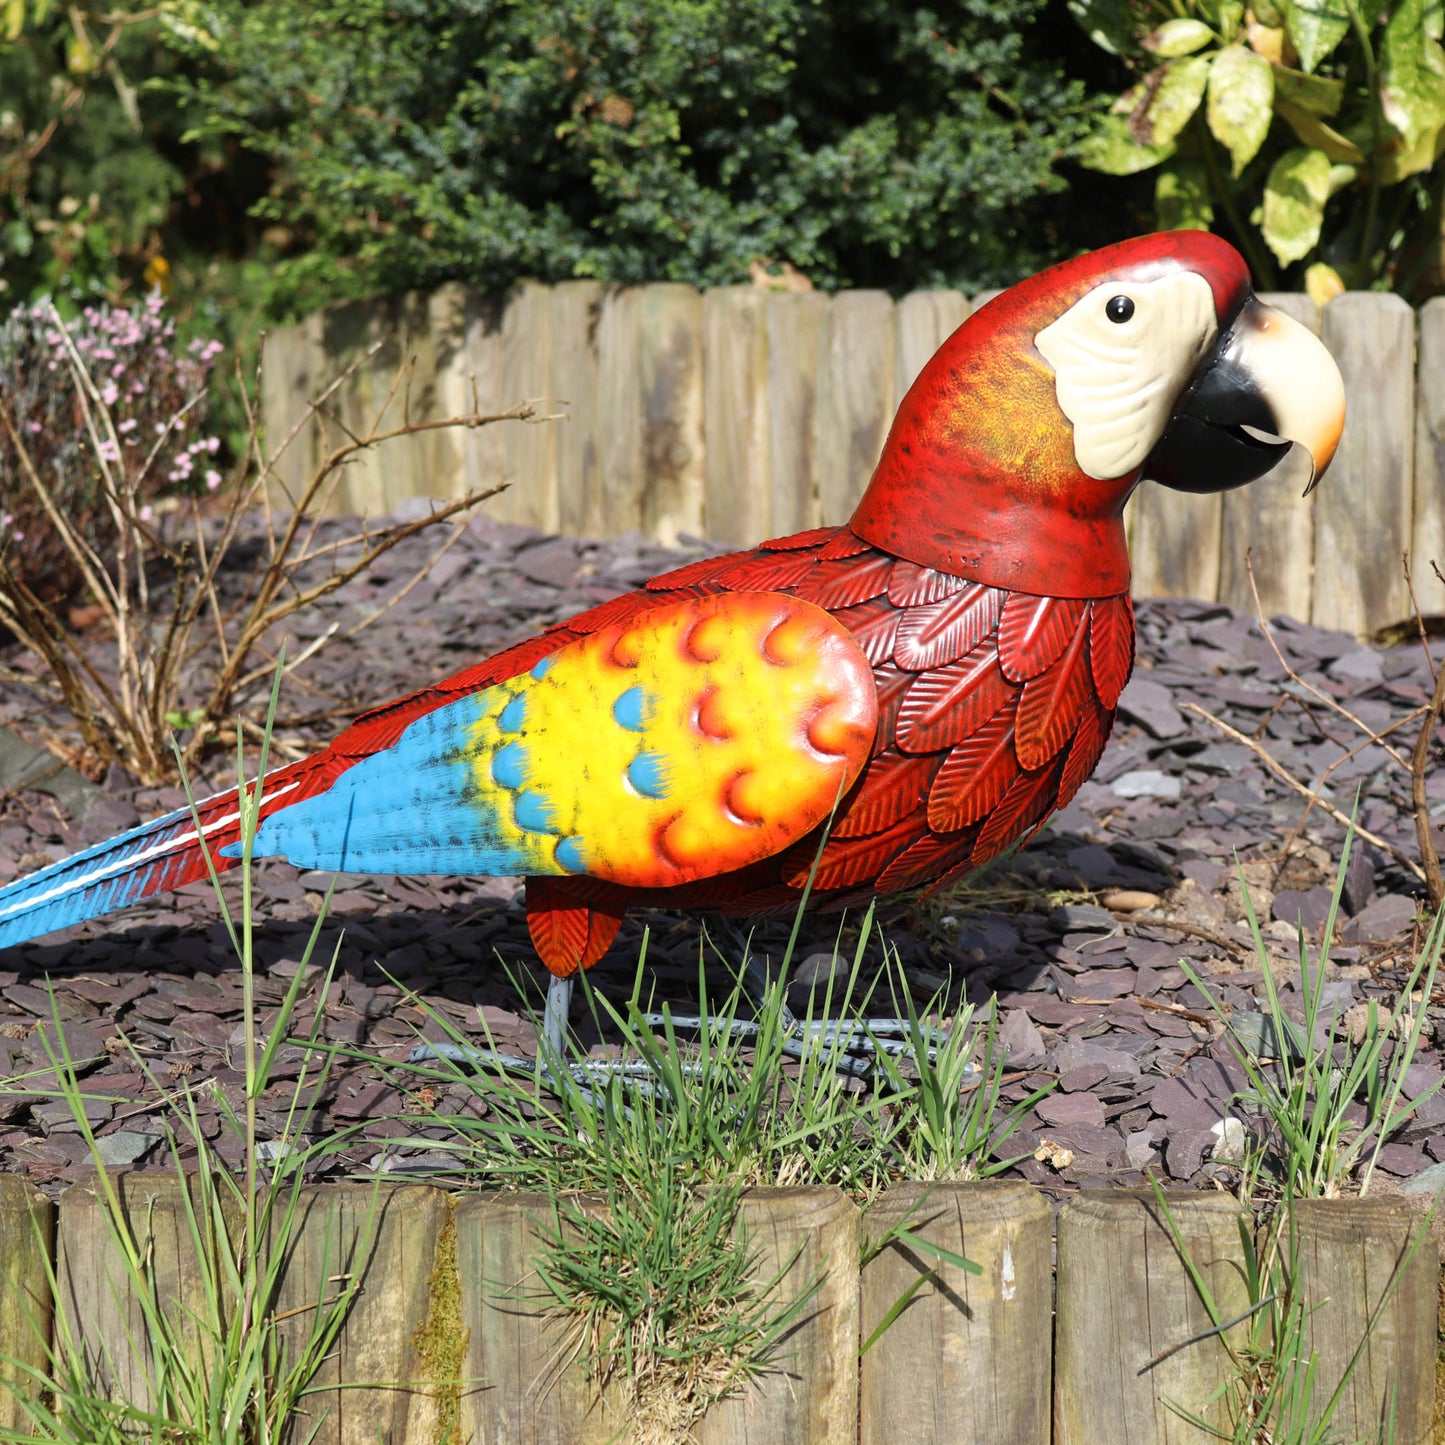 Deluxe Red Parrot # červený kovový papagáj